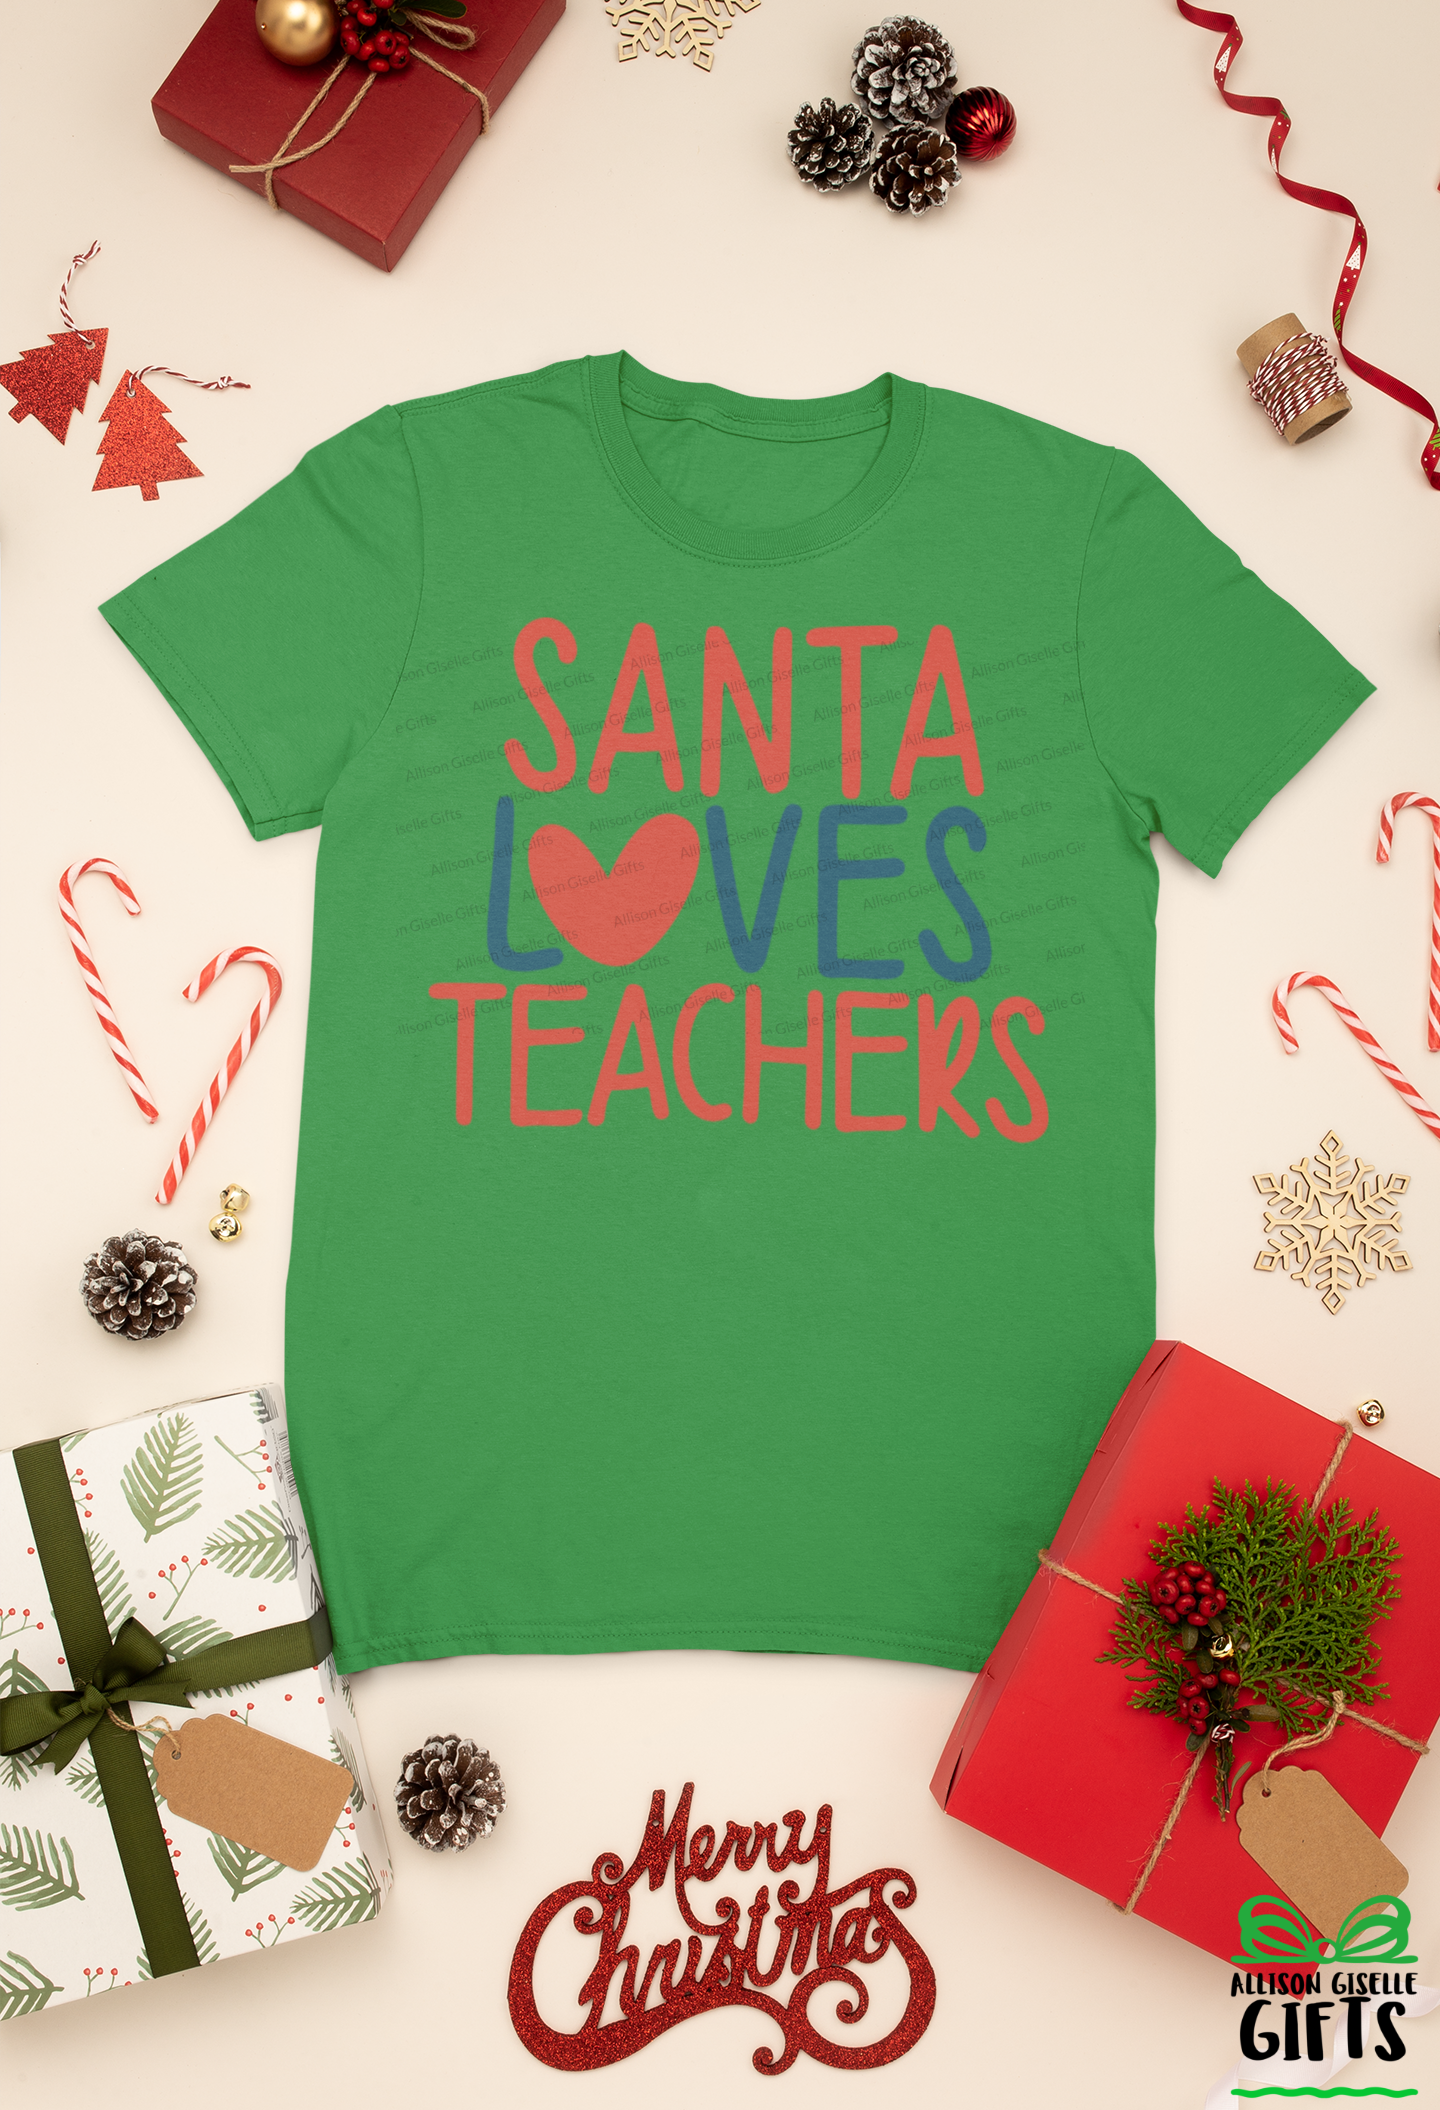 Santa Loves Teachers Christmas Shirt, Christmas Shirt, Christmas Shirt, Holiday T Shirt, Teacher Christmas Gift